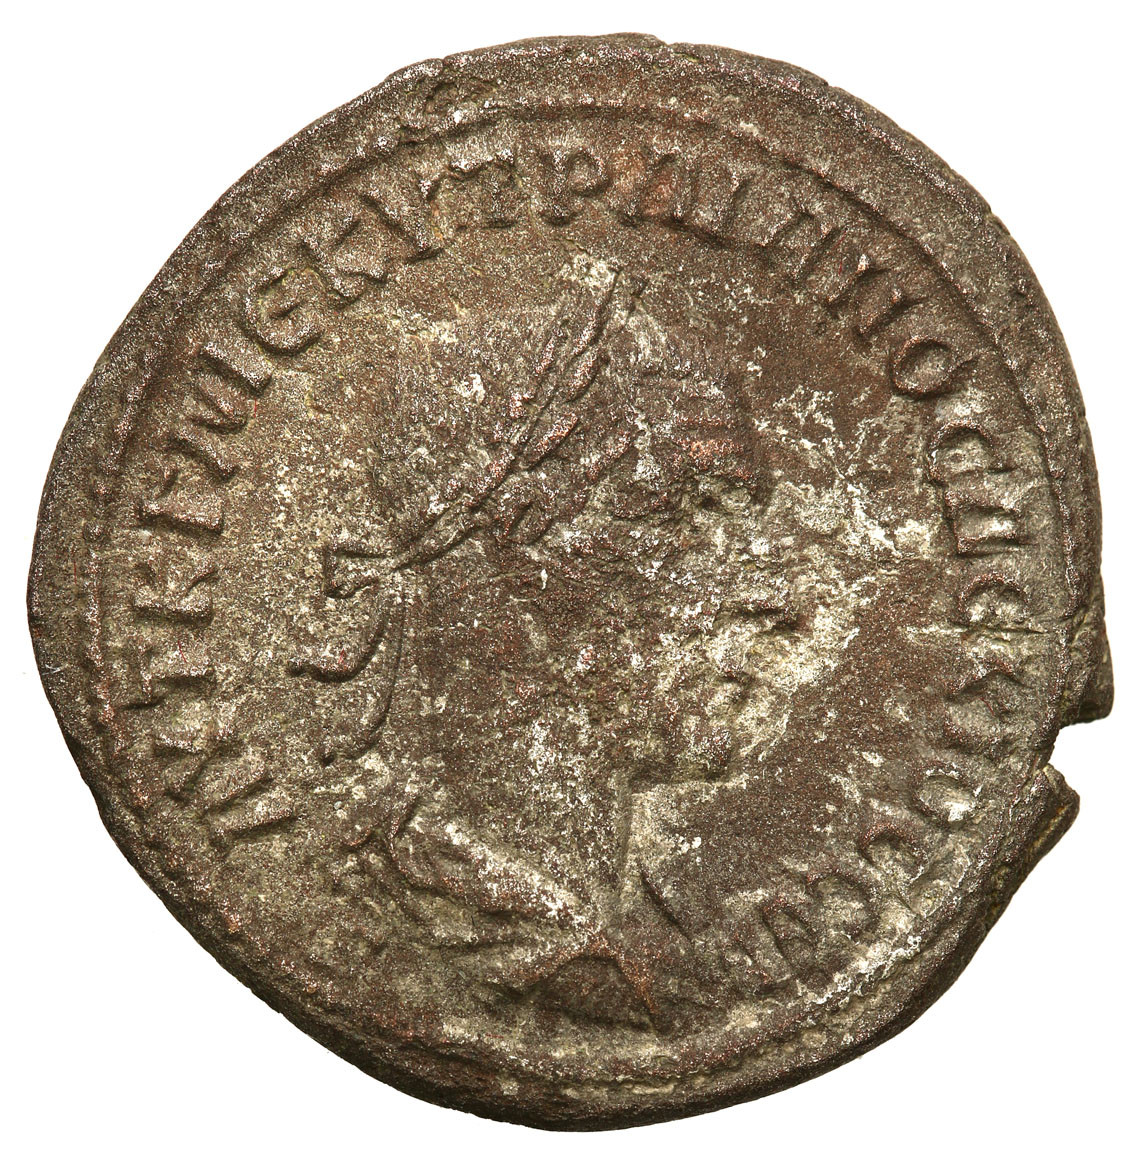 Prowincje Rzymskie, Syria, Antiochia, Tetradrachma, Trajan Decjusz 249 - 251 r. n. e.